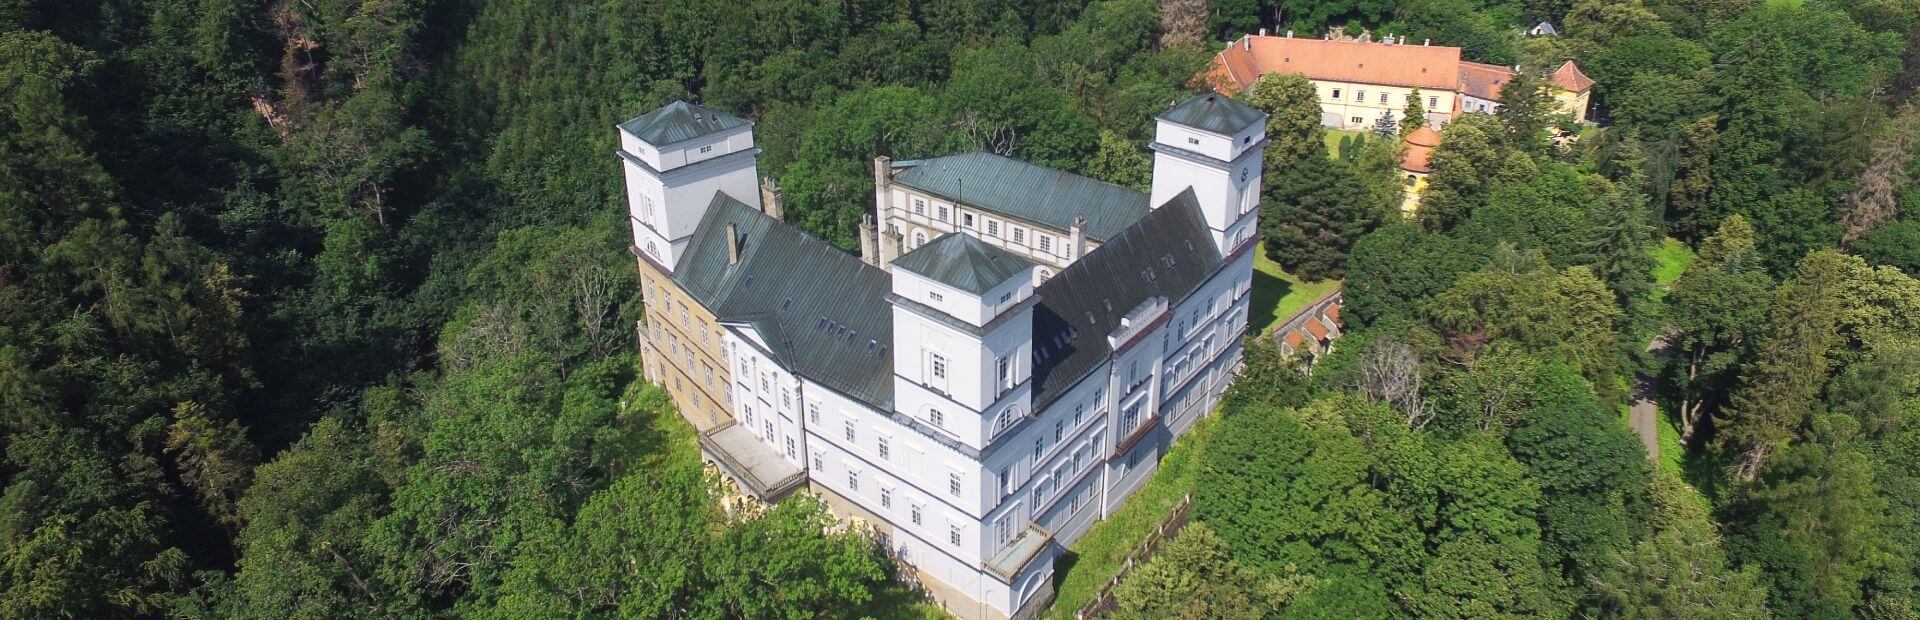 Ubytování na zámku Račice